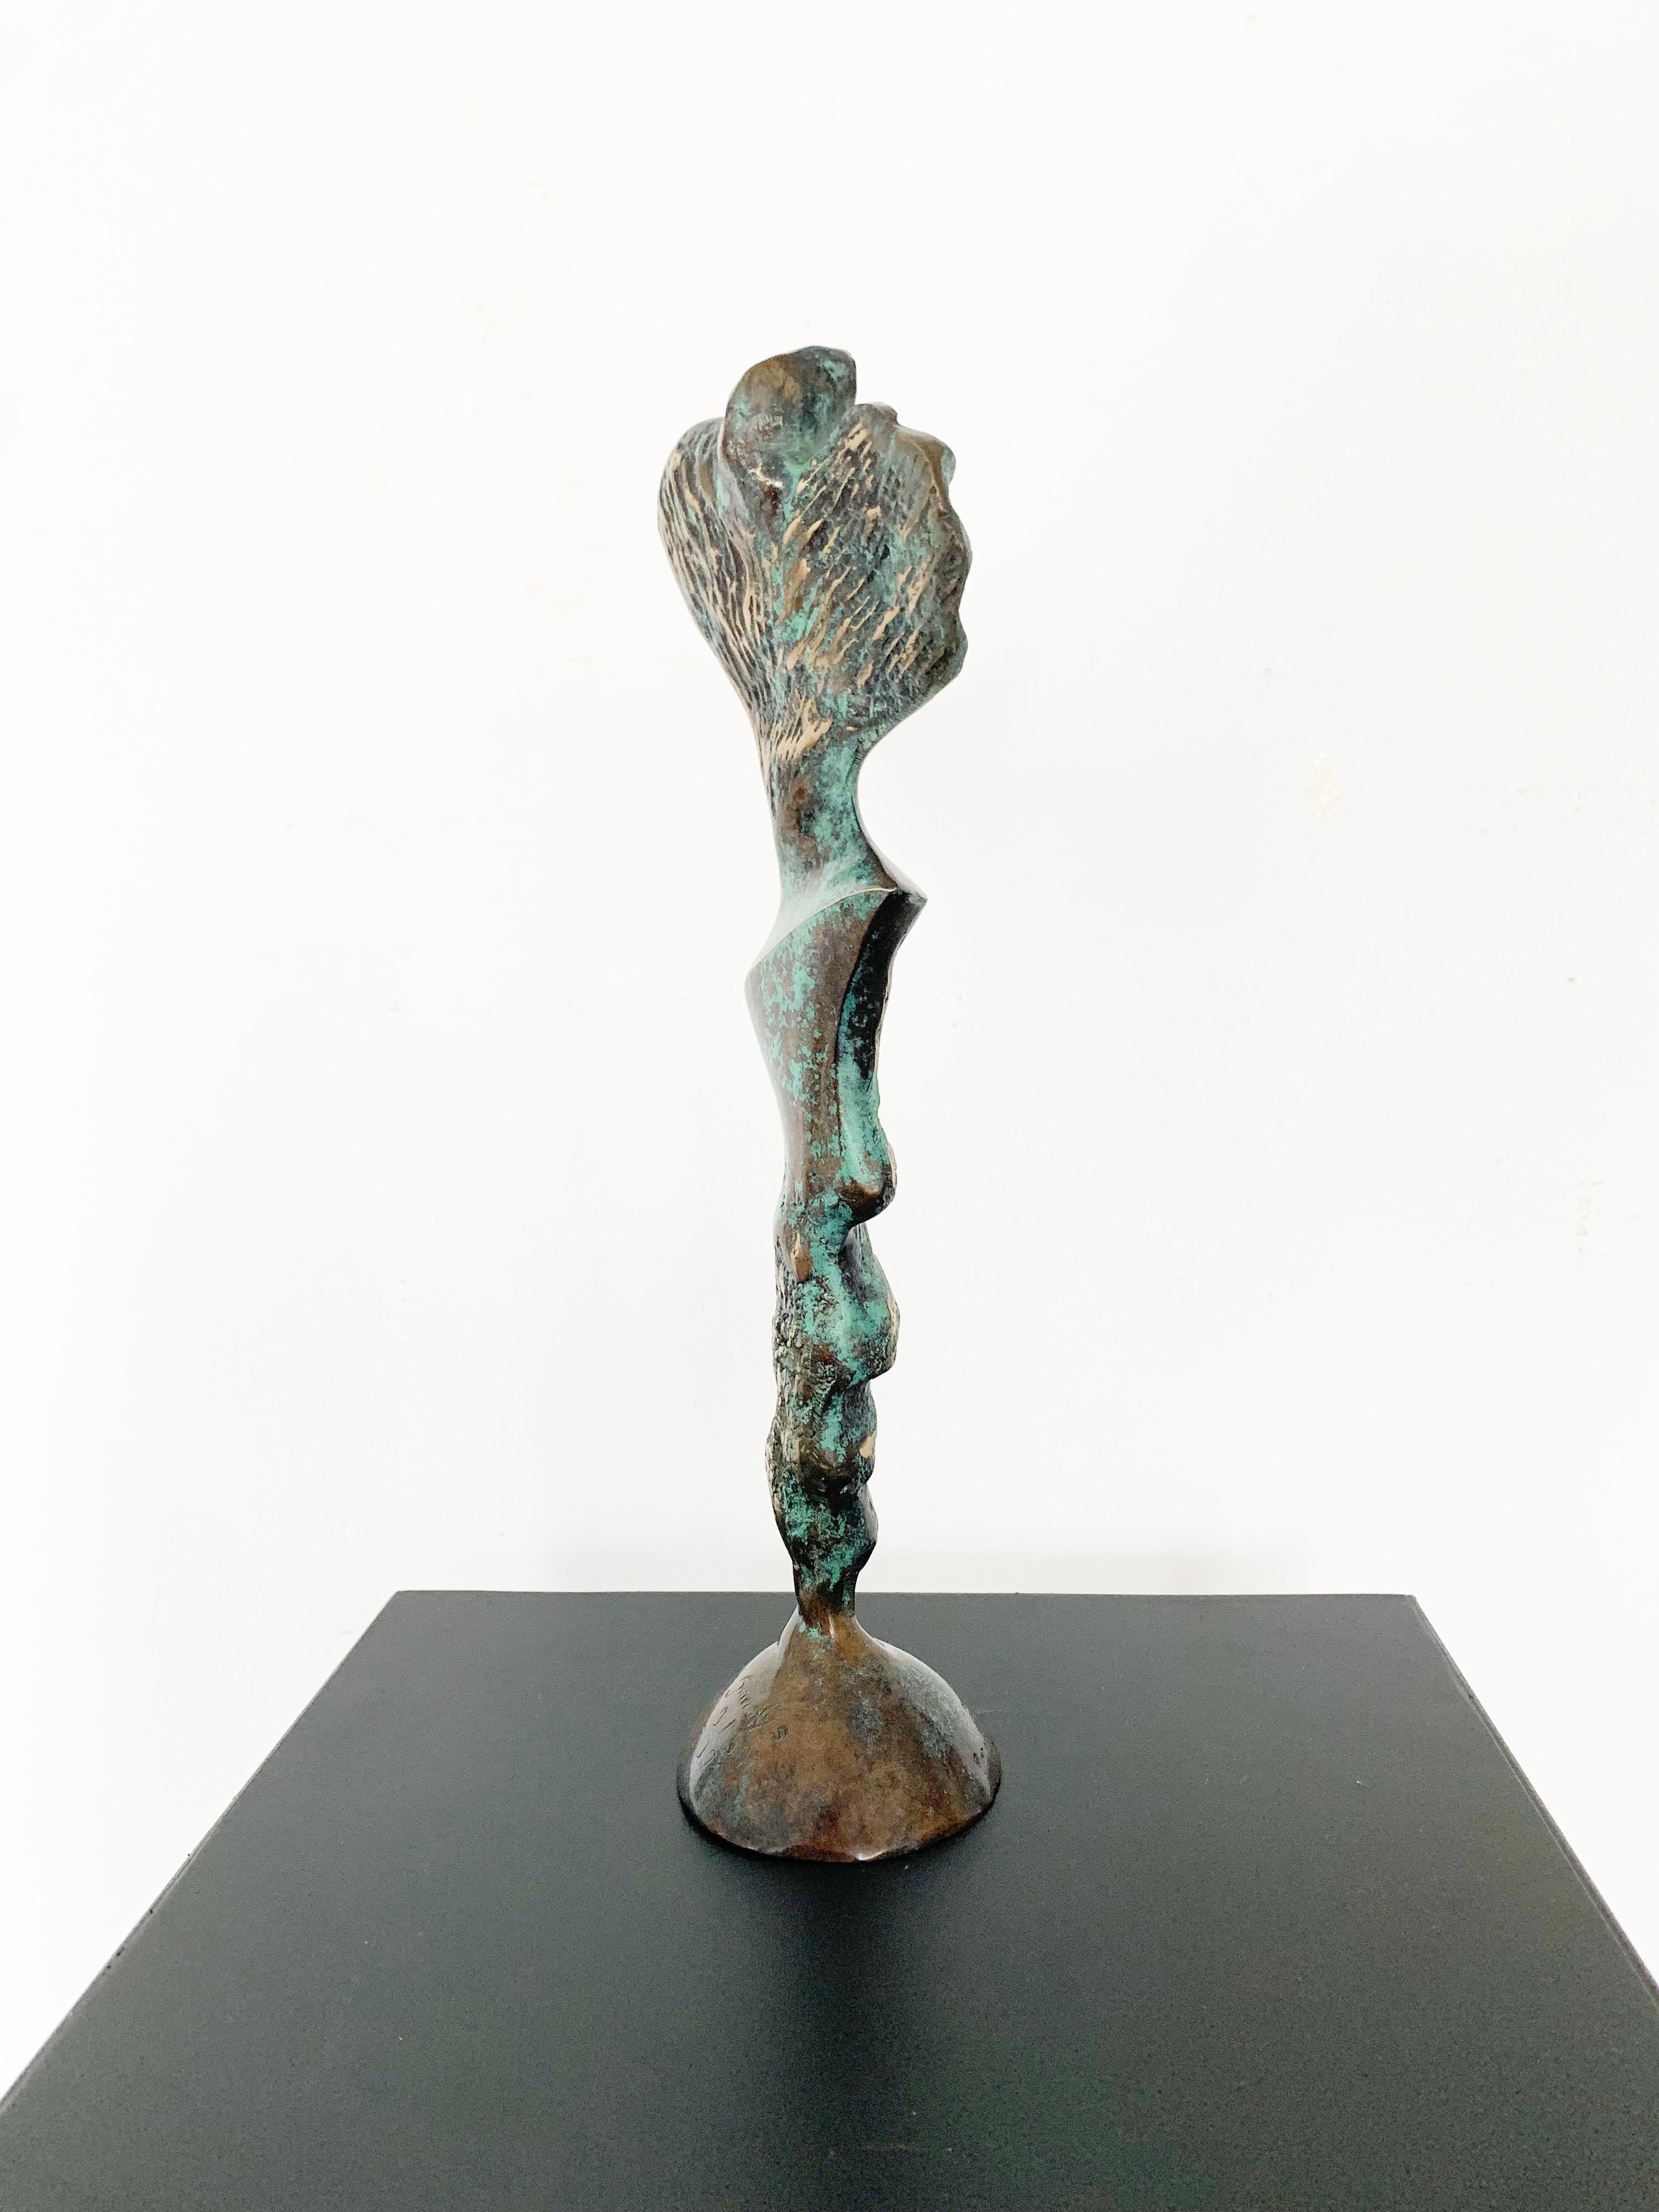 Zeitgenössische Bronzeskulptur auf Marmorsockel des polnischen Künstlers Stan Wysocki. Das Kunstwerk stammt aus einer limitierten Auflage von 50 Stück. Die Skulptur stellt eine weibliche Figur dar, die durch einen geometrischen, synthetisierenden